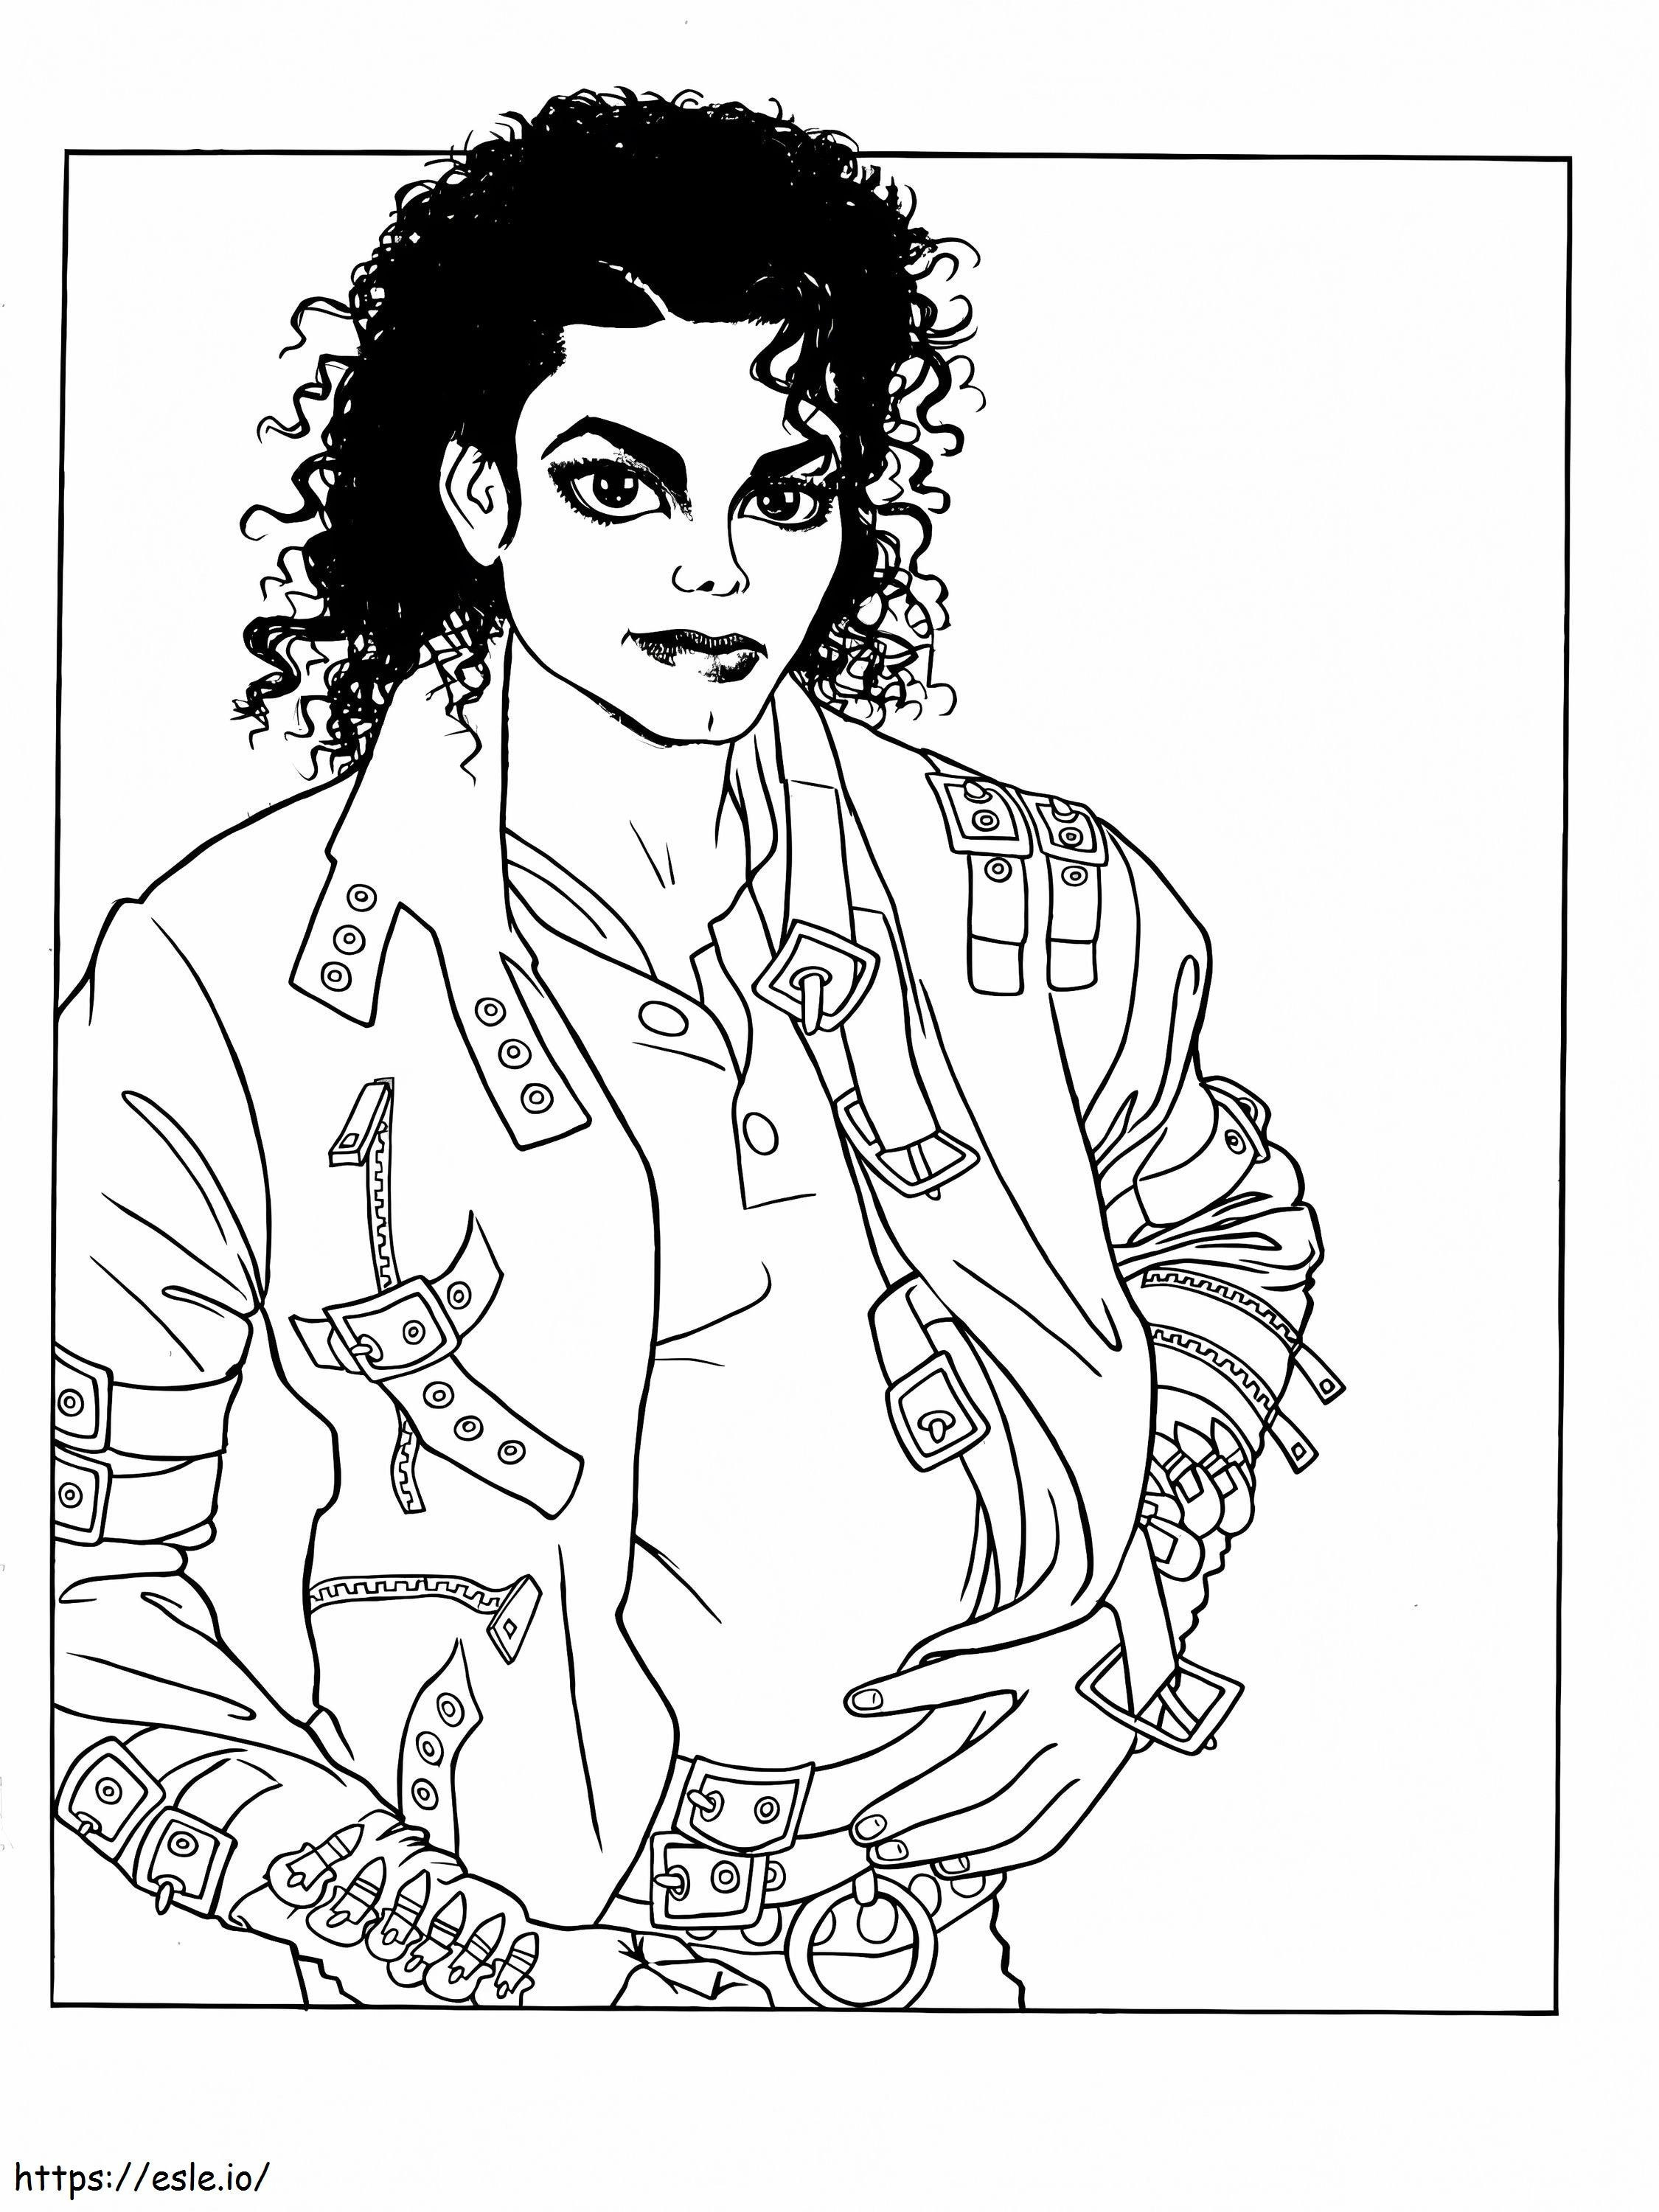 Entre no mundo mágico de Michael Jackson para colorir